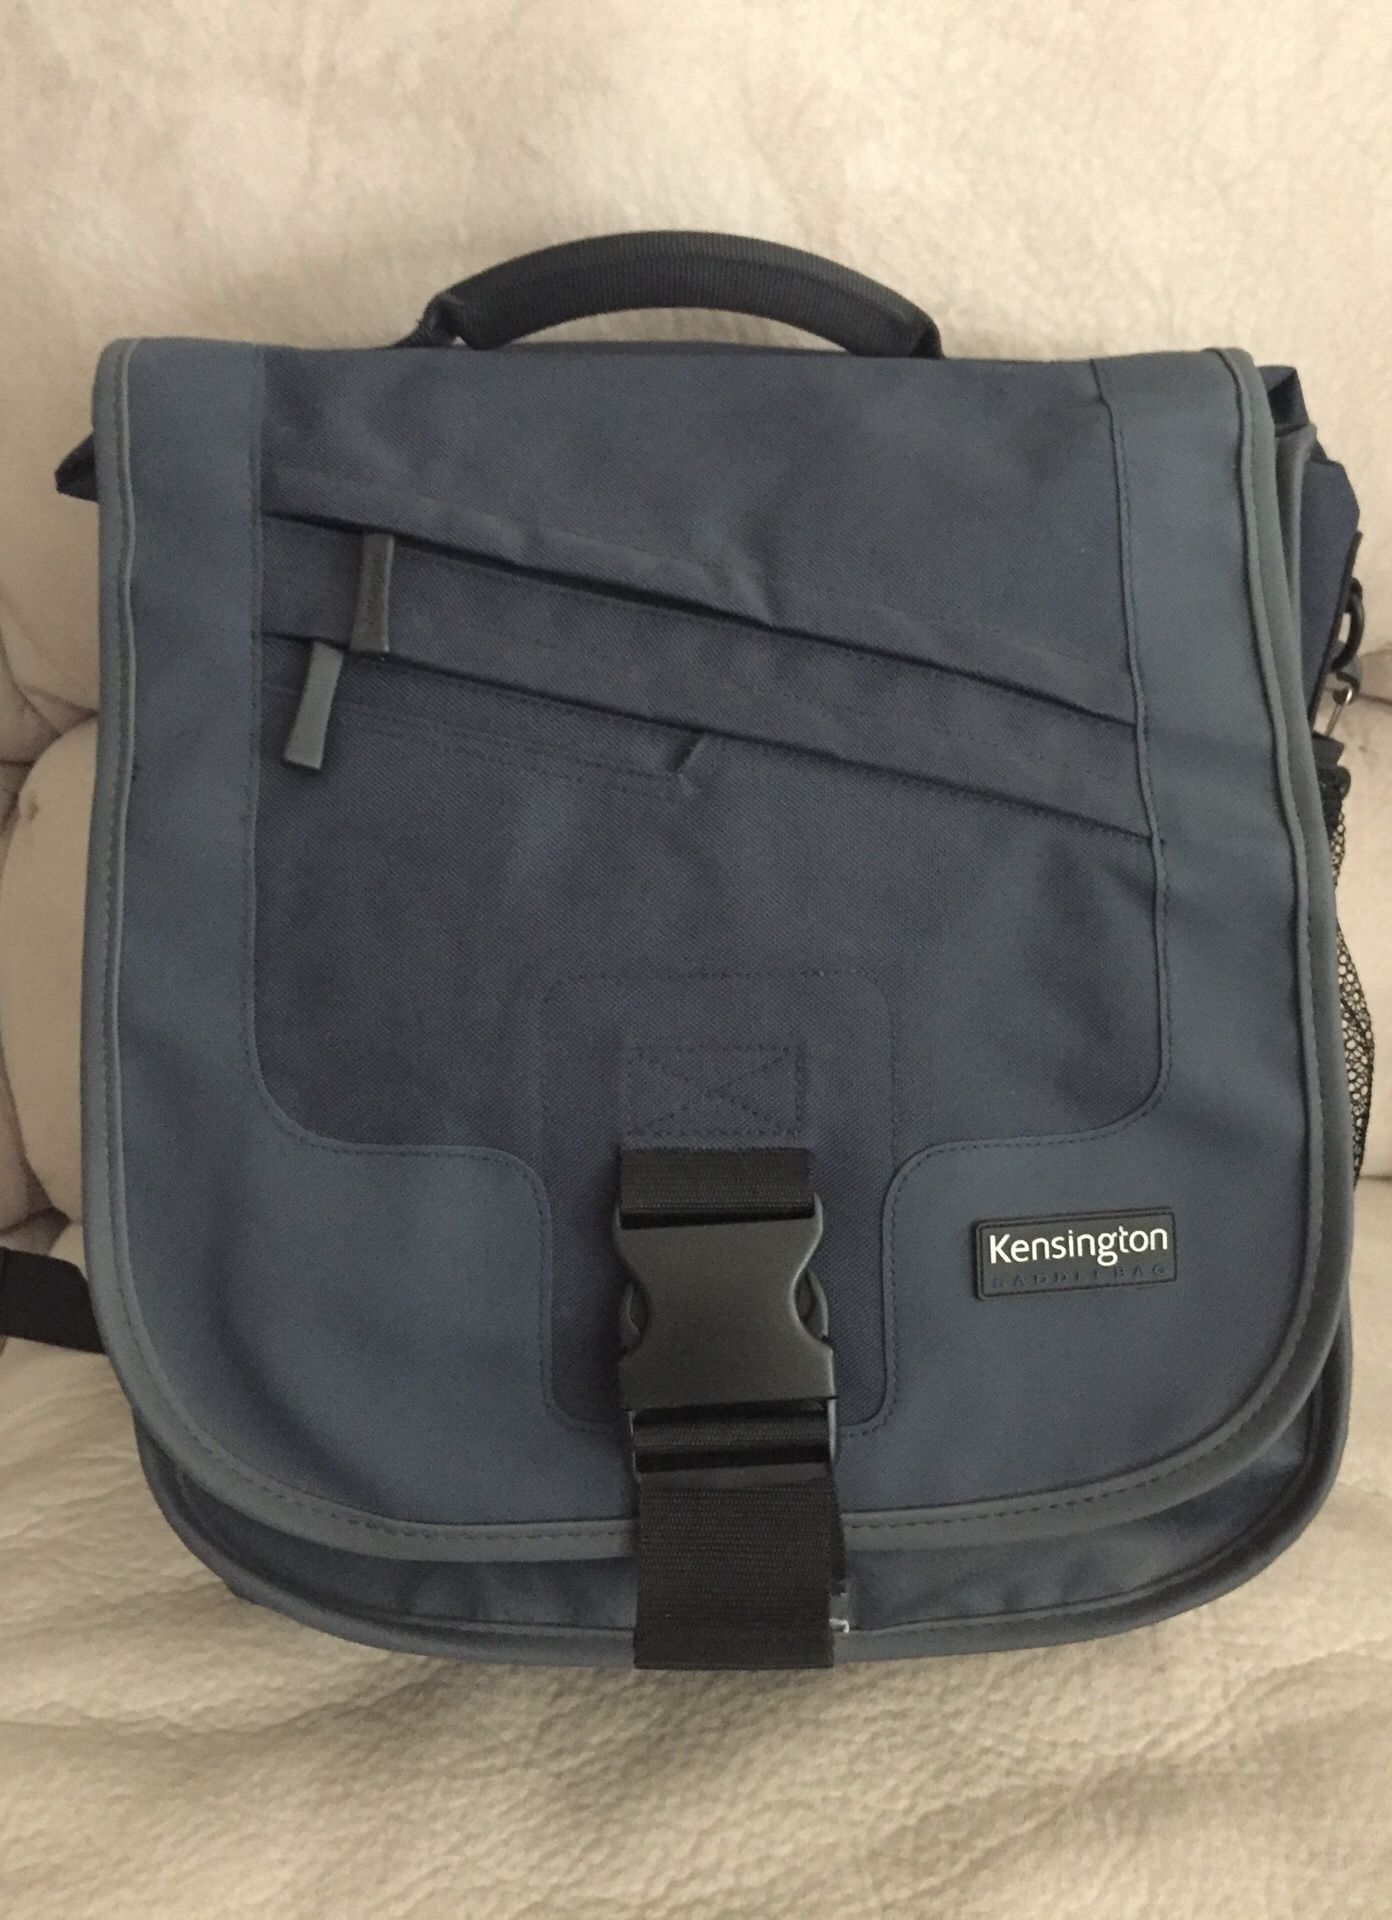 Kensington Navy Blue Laptop Bag/backpack